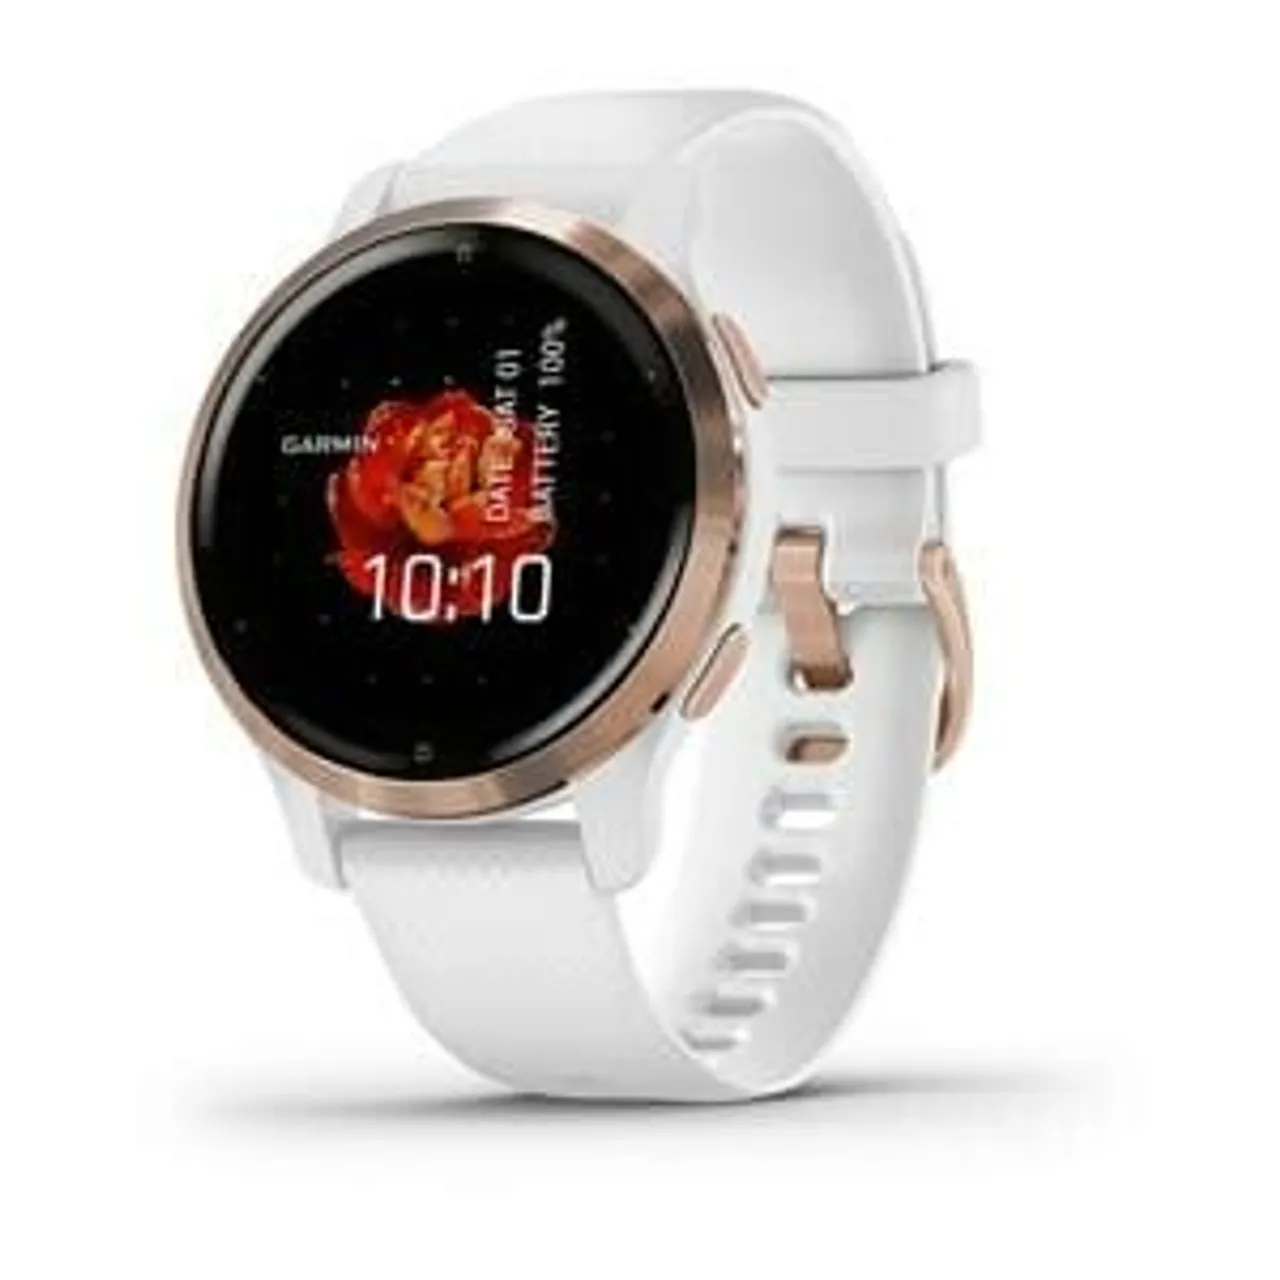 Venu 2S Weiss/Rosegold mit Schnellwechsel-Silikon-Armband 18mm Smartwatch